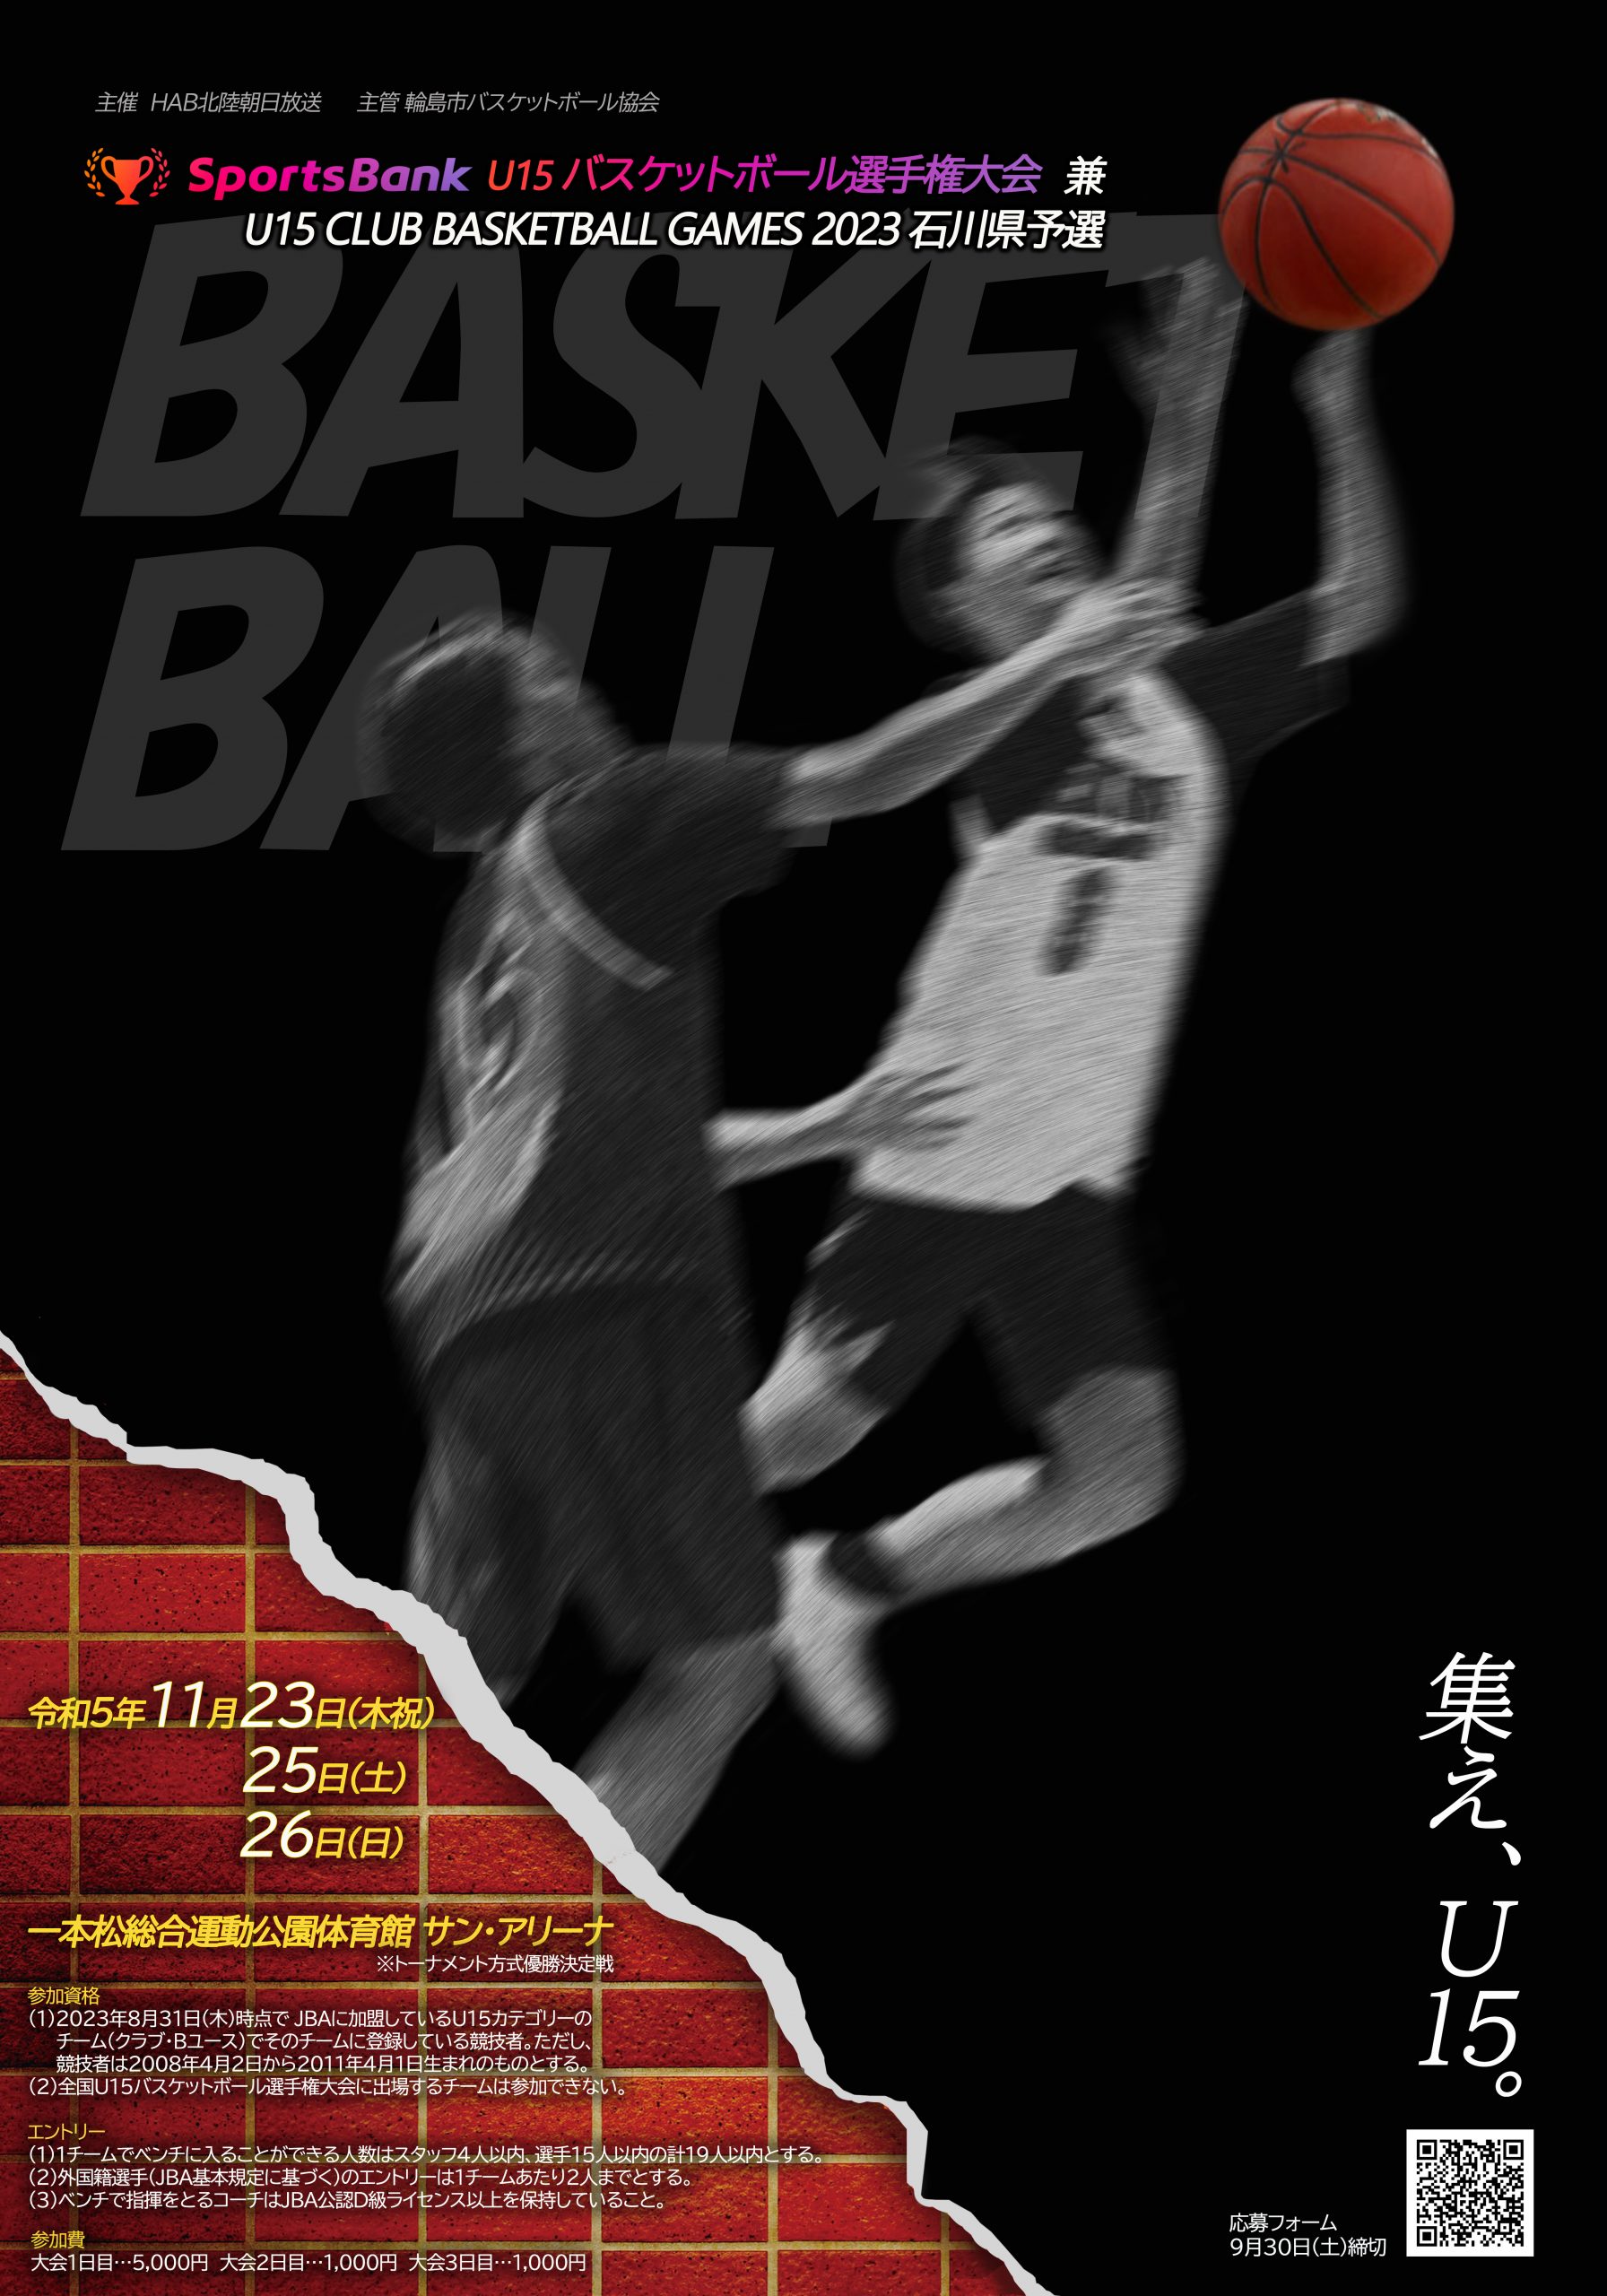 【試合結果】SportsBank U15バスケットボール選手権大会 兼 U15 CLUB BASKETBALL GAMES 2023 石川県予選